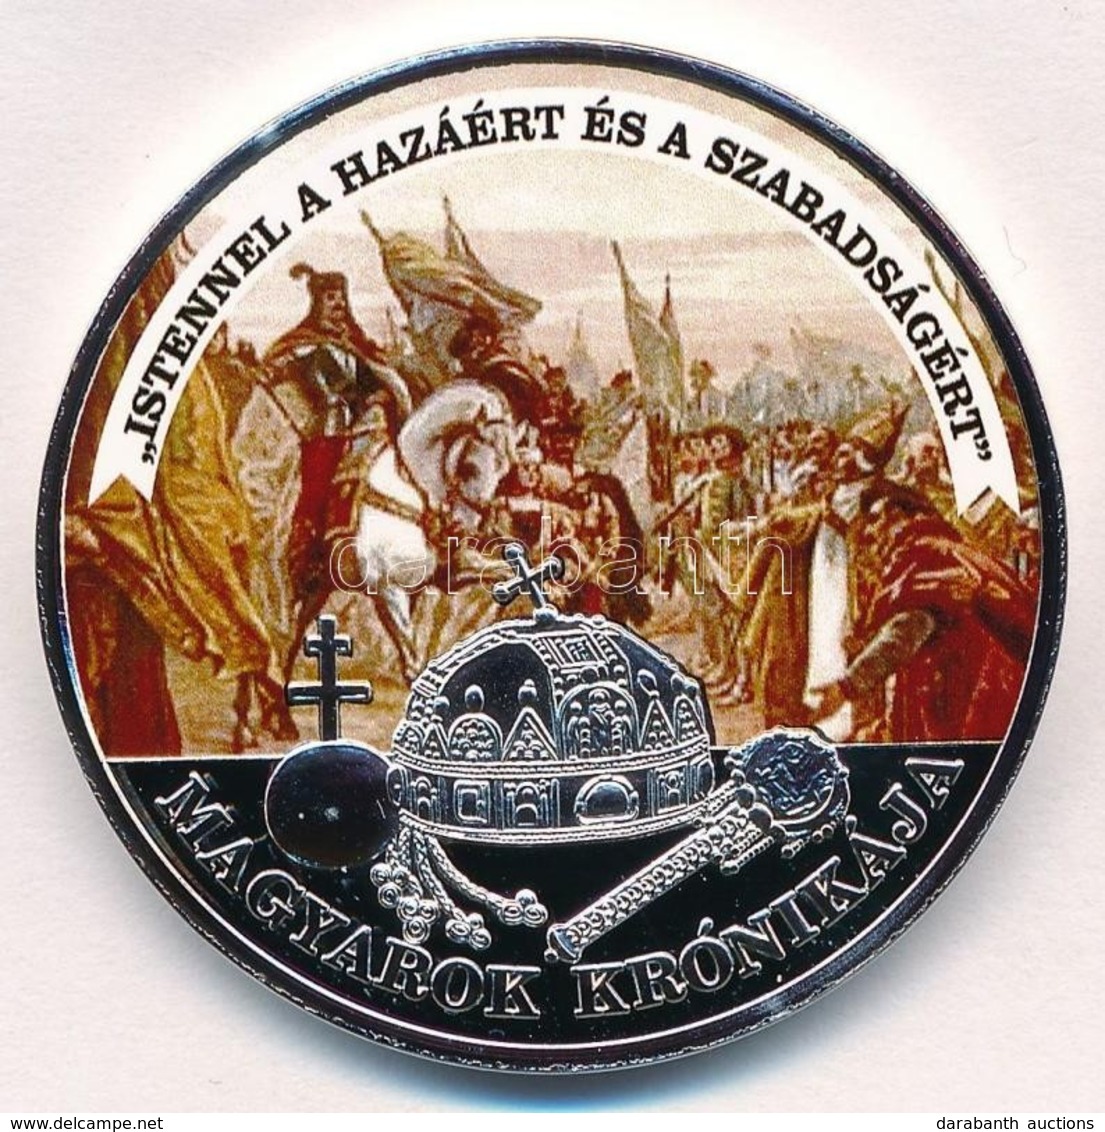 DN 'Magyarok Krónikája - Istennel A Hazáért és A Szabadságért' Ezüstözött, Multicolor Cu Emlékérem Tanúsítvánnyal (42mm) - Unclassified